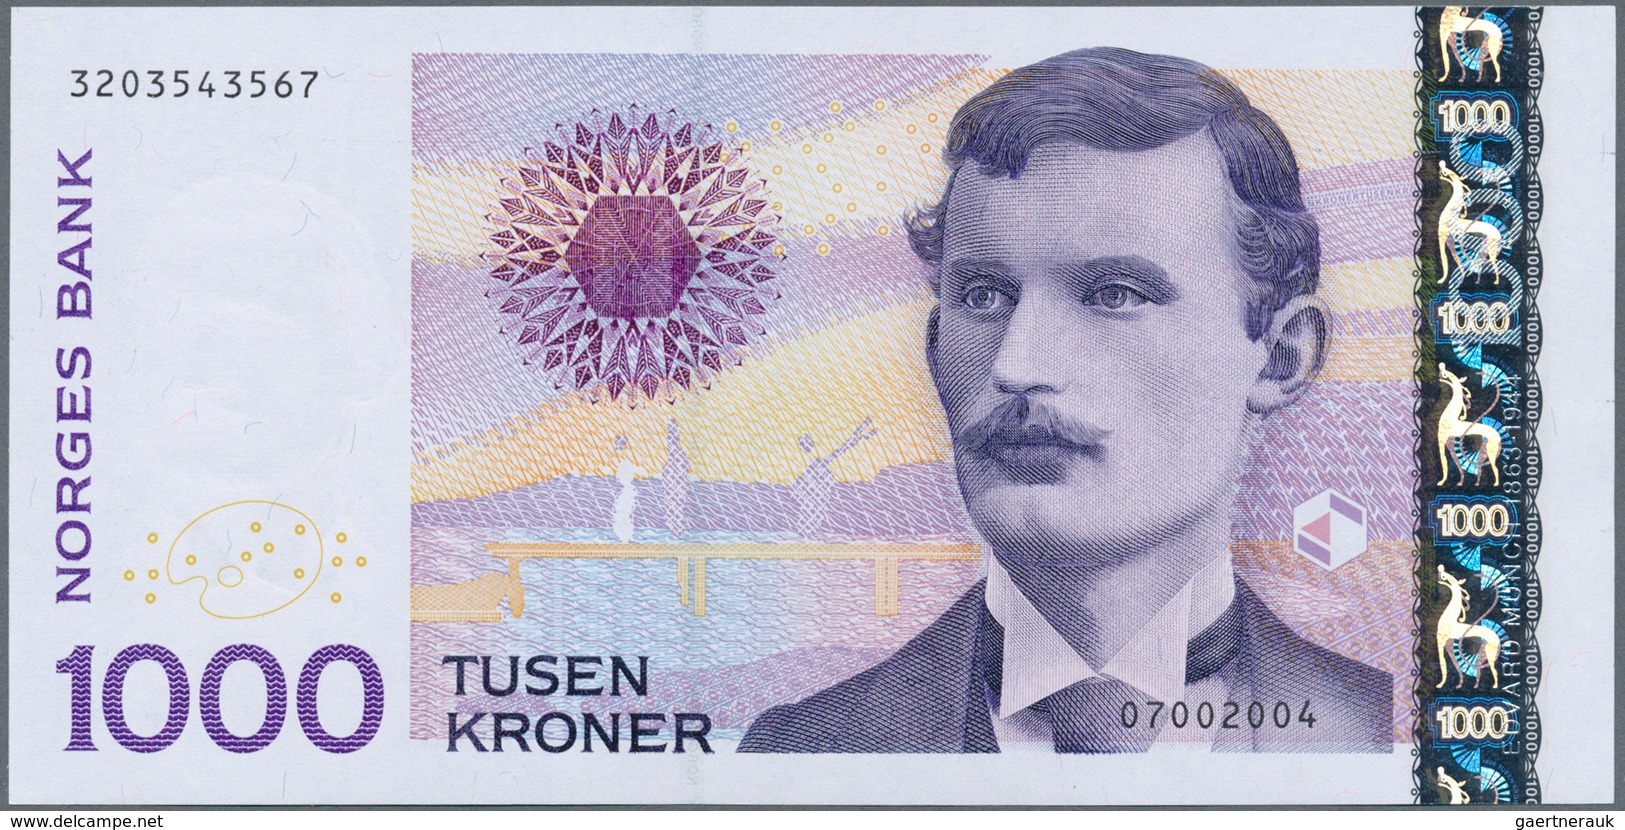 02175 Norway / Norwegen: 1000 Kroner 2004 P. 52 In Condition: UNC. - Norvegia